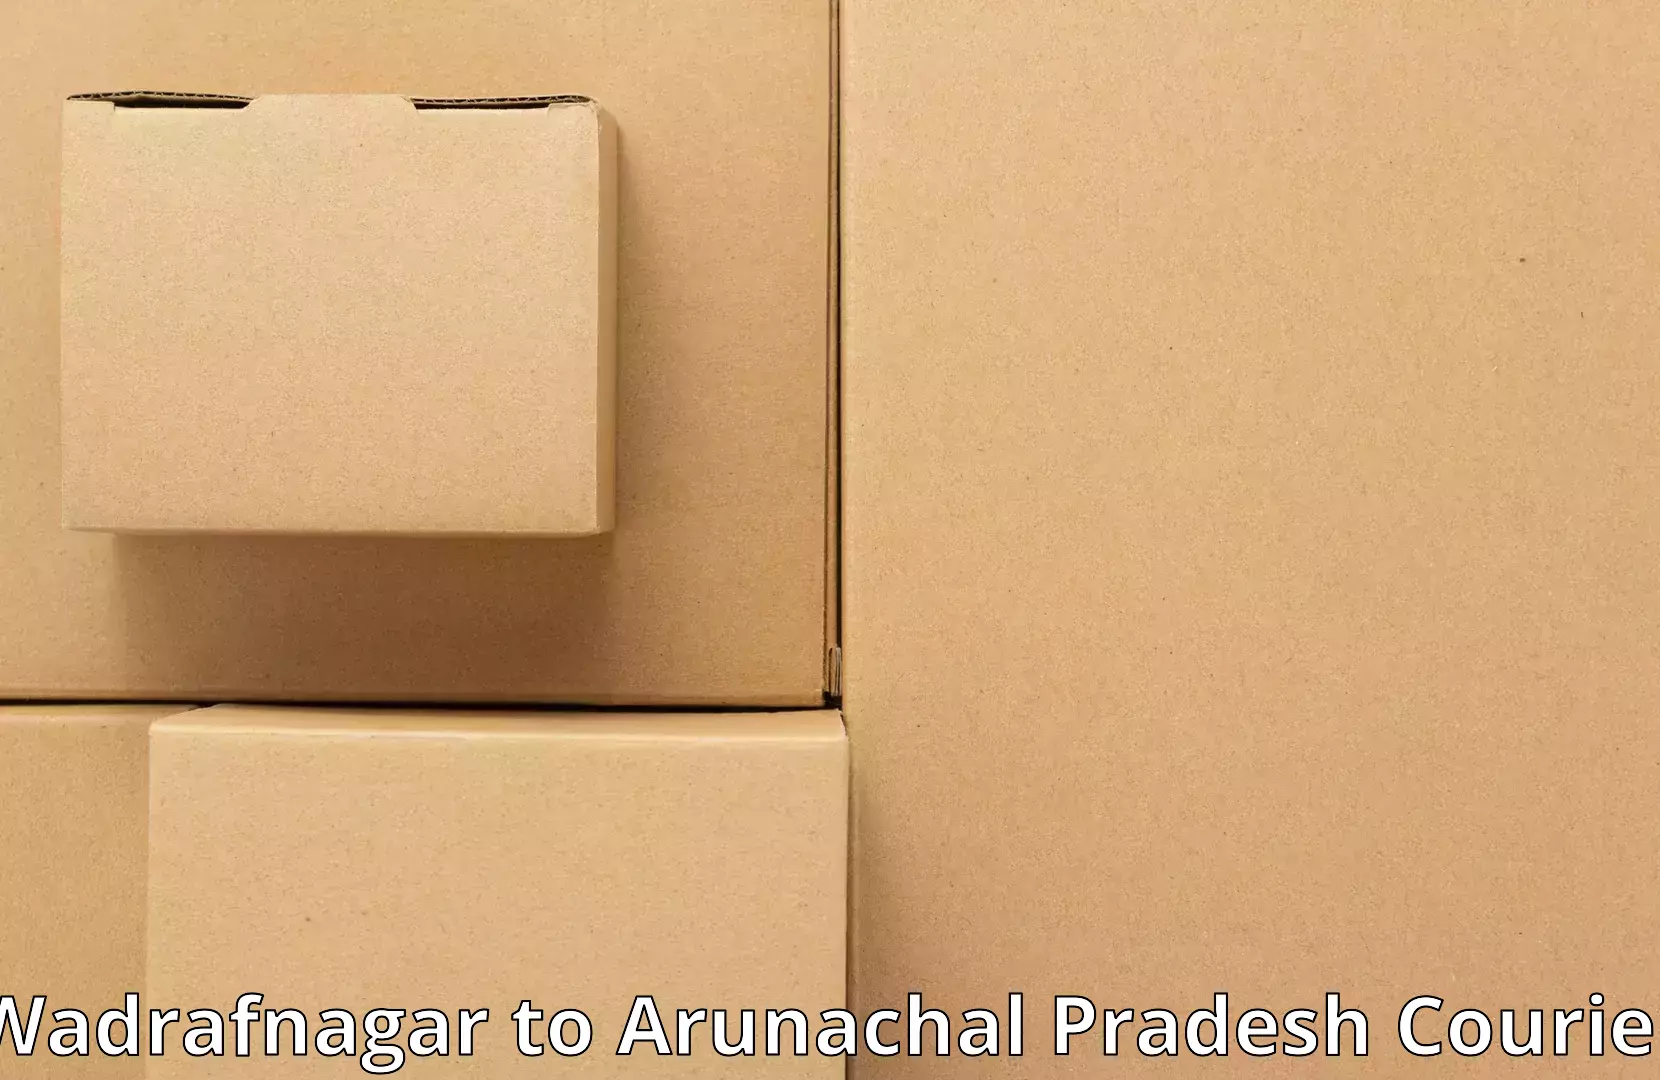 Household transport experts Wadrafnagar to Arunachal Pradesh